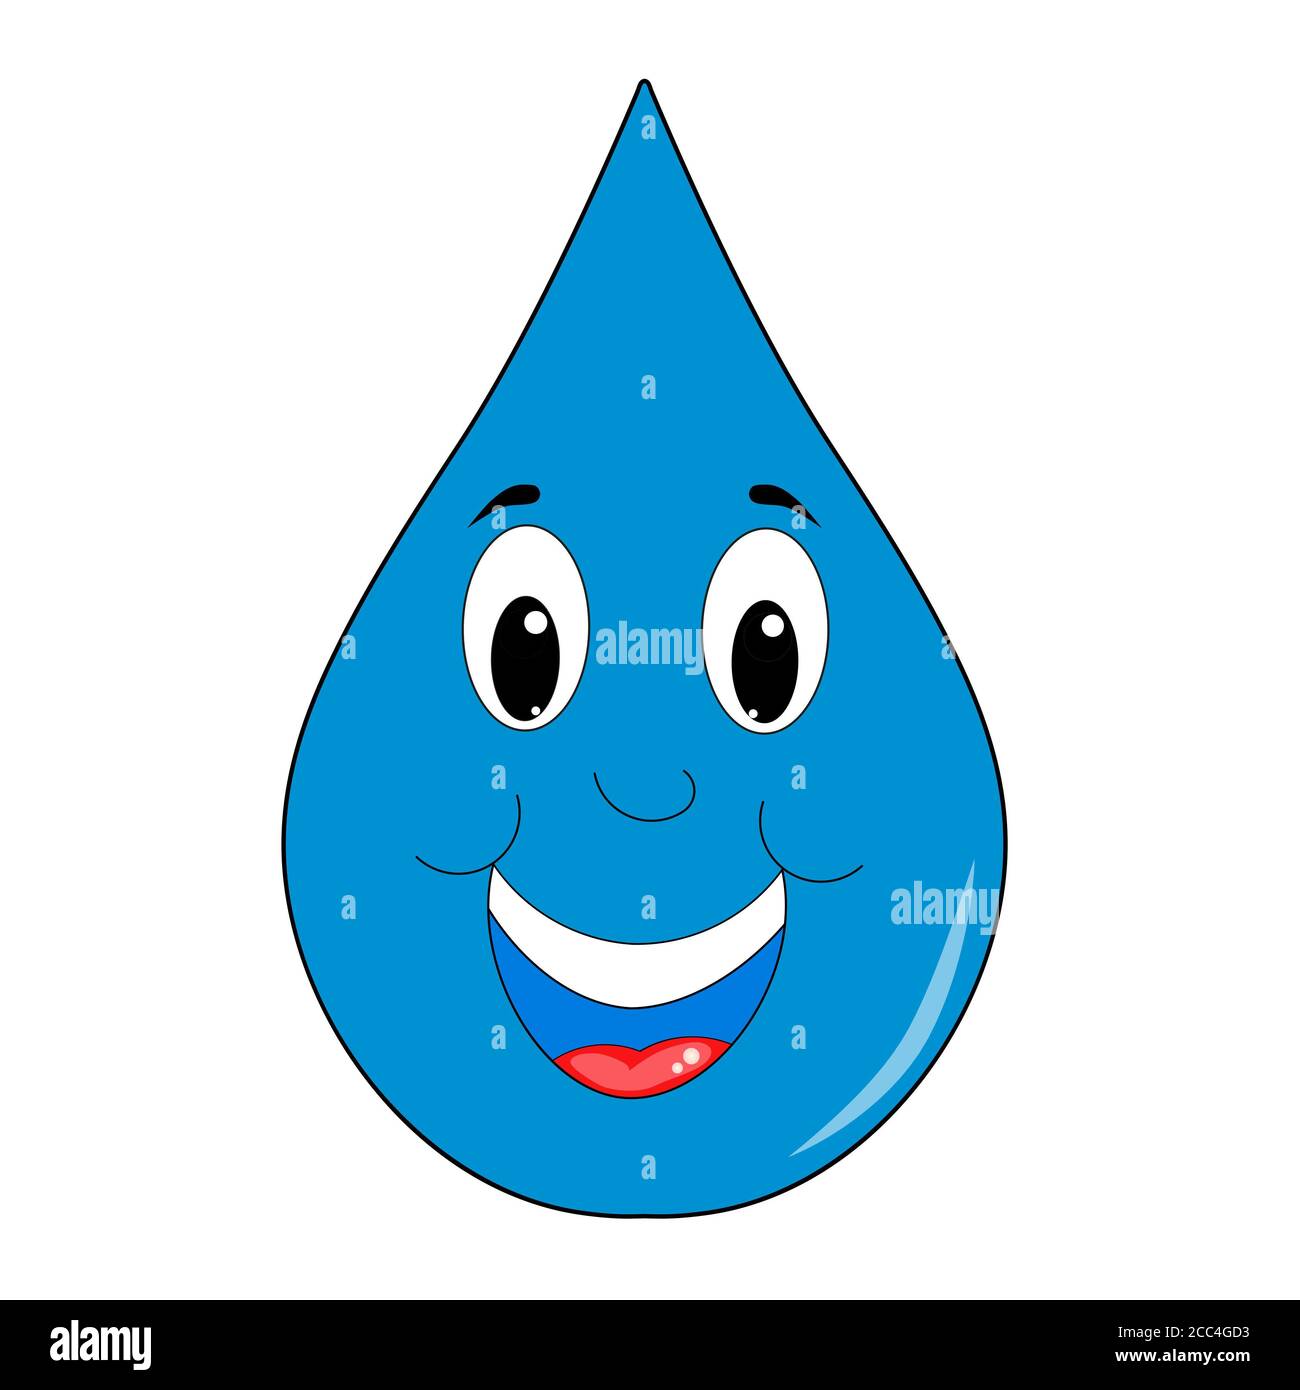 Immagine di una goccia d'acqua sorridente su un bianco sfondo Foto Stock